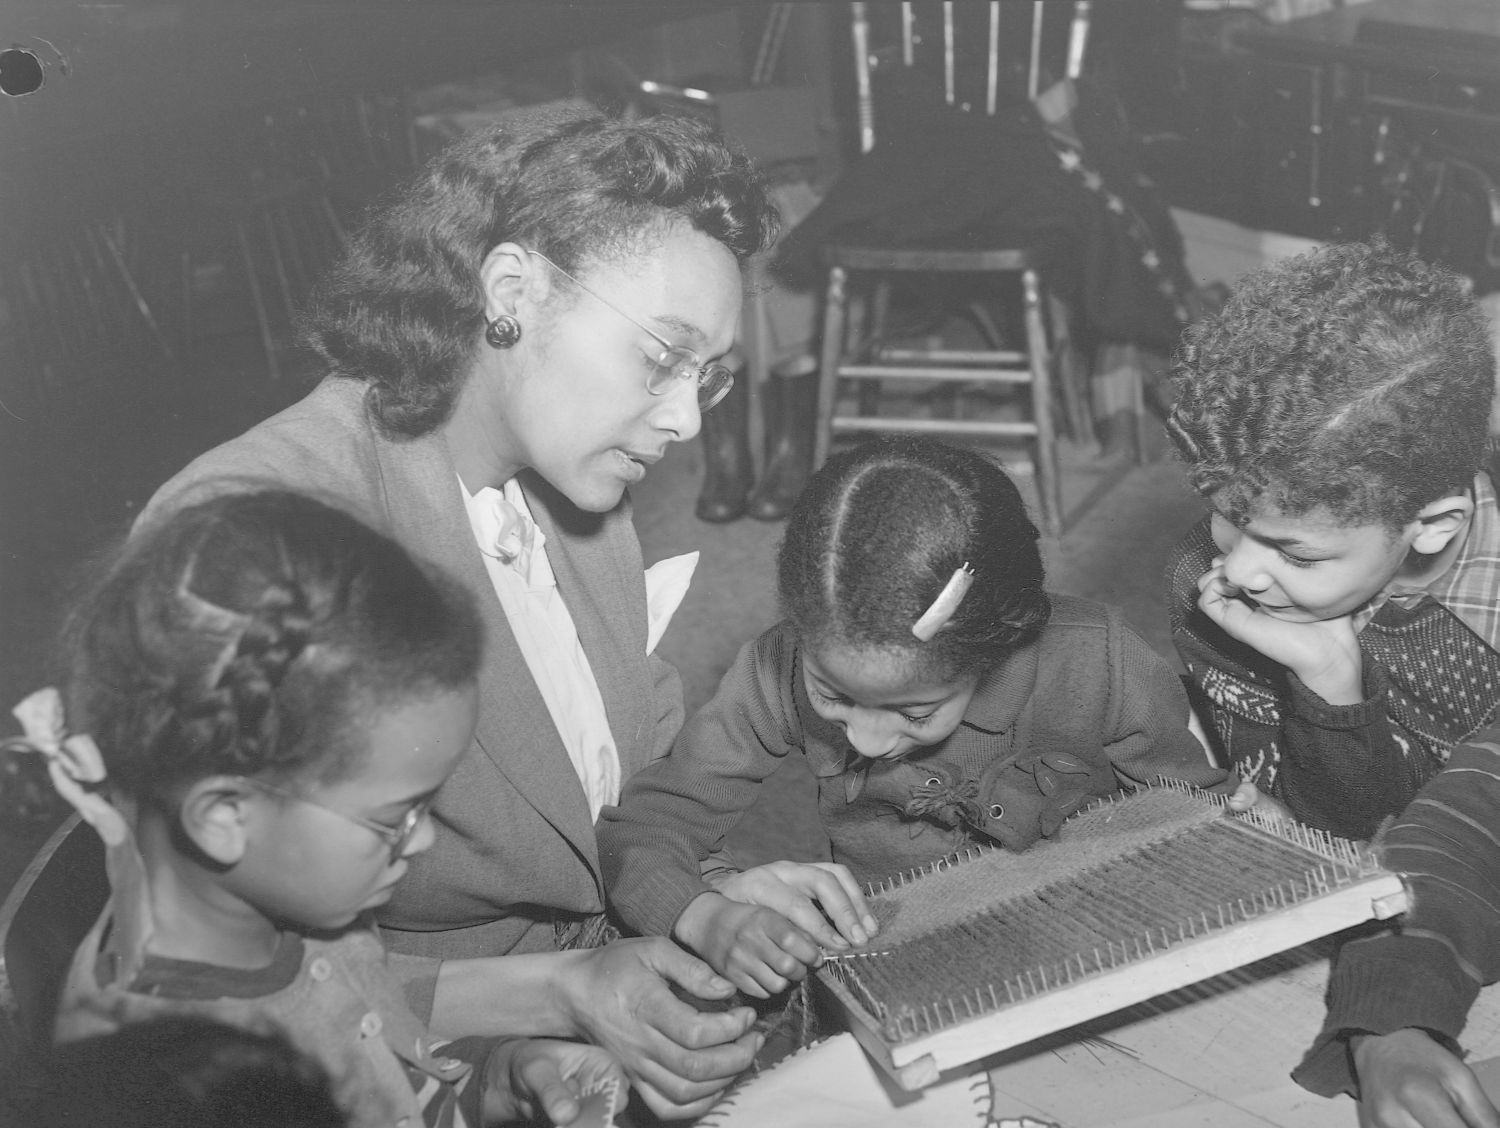 Photographie en noir et blanc d’une femme lisant un livre avec trois enfants.